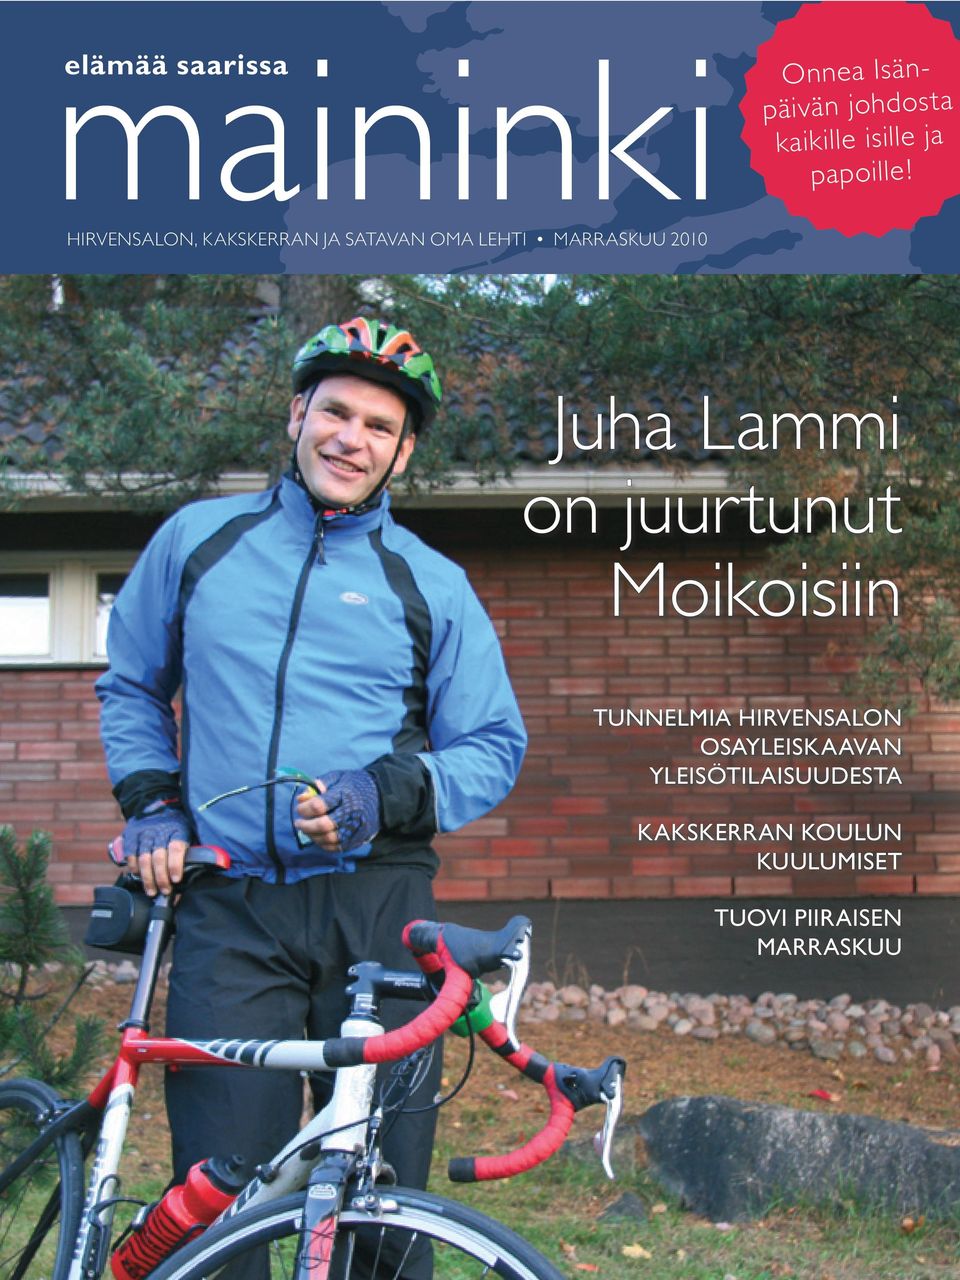 Juha Lammi on juurtunut Moikoisiin TUNNELMIA HIRVENSALON OSAYLEISKAAVAN